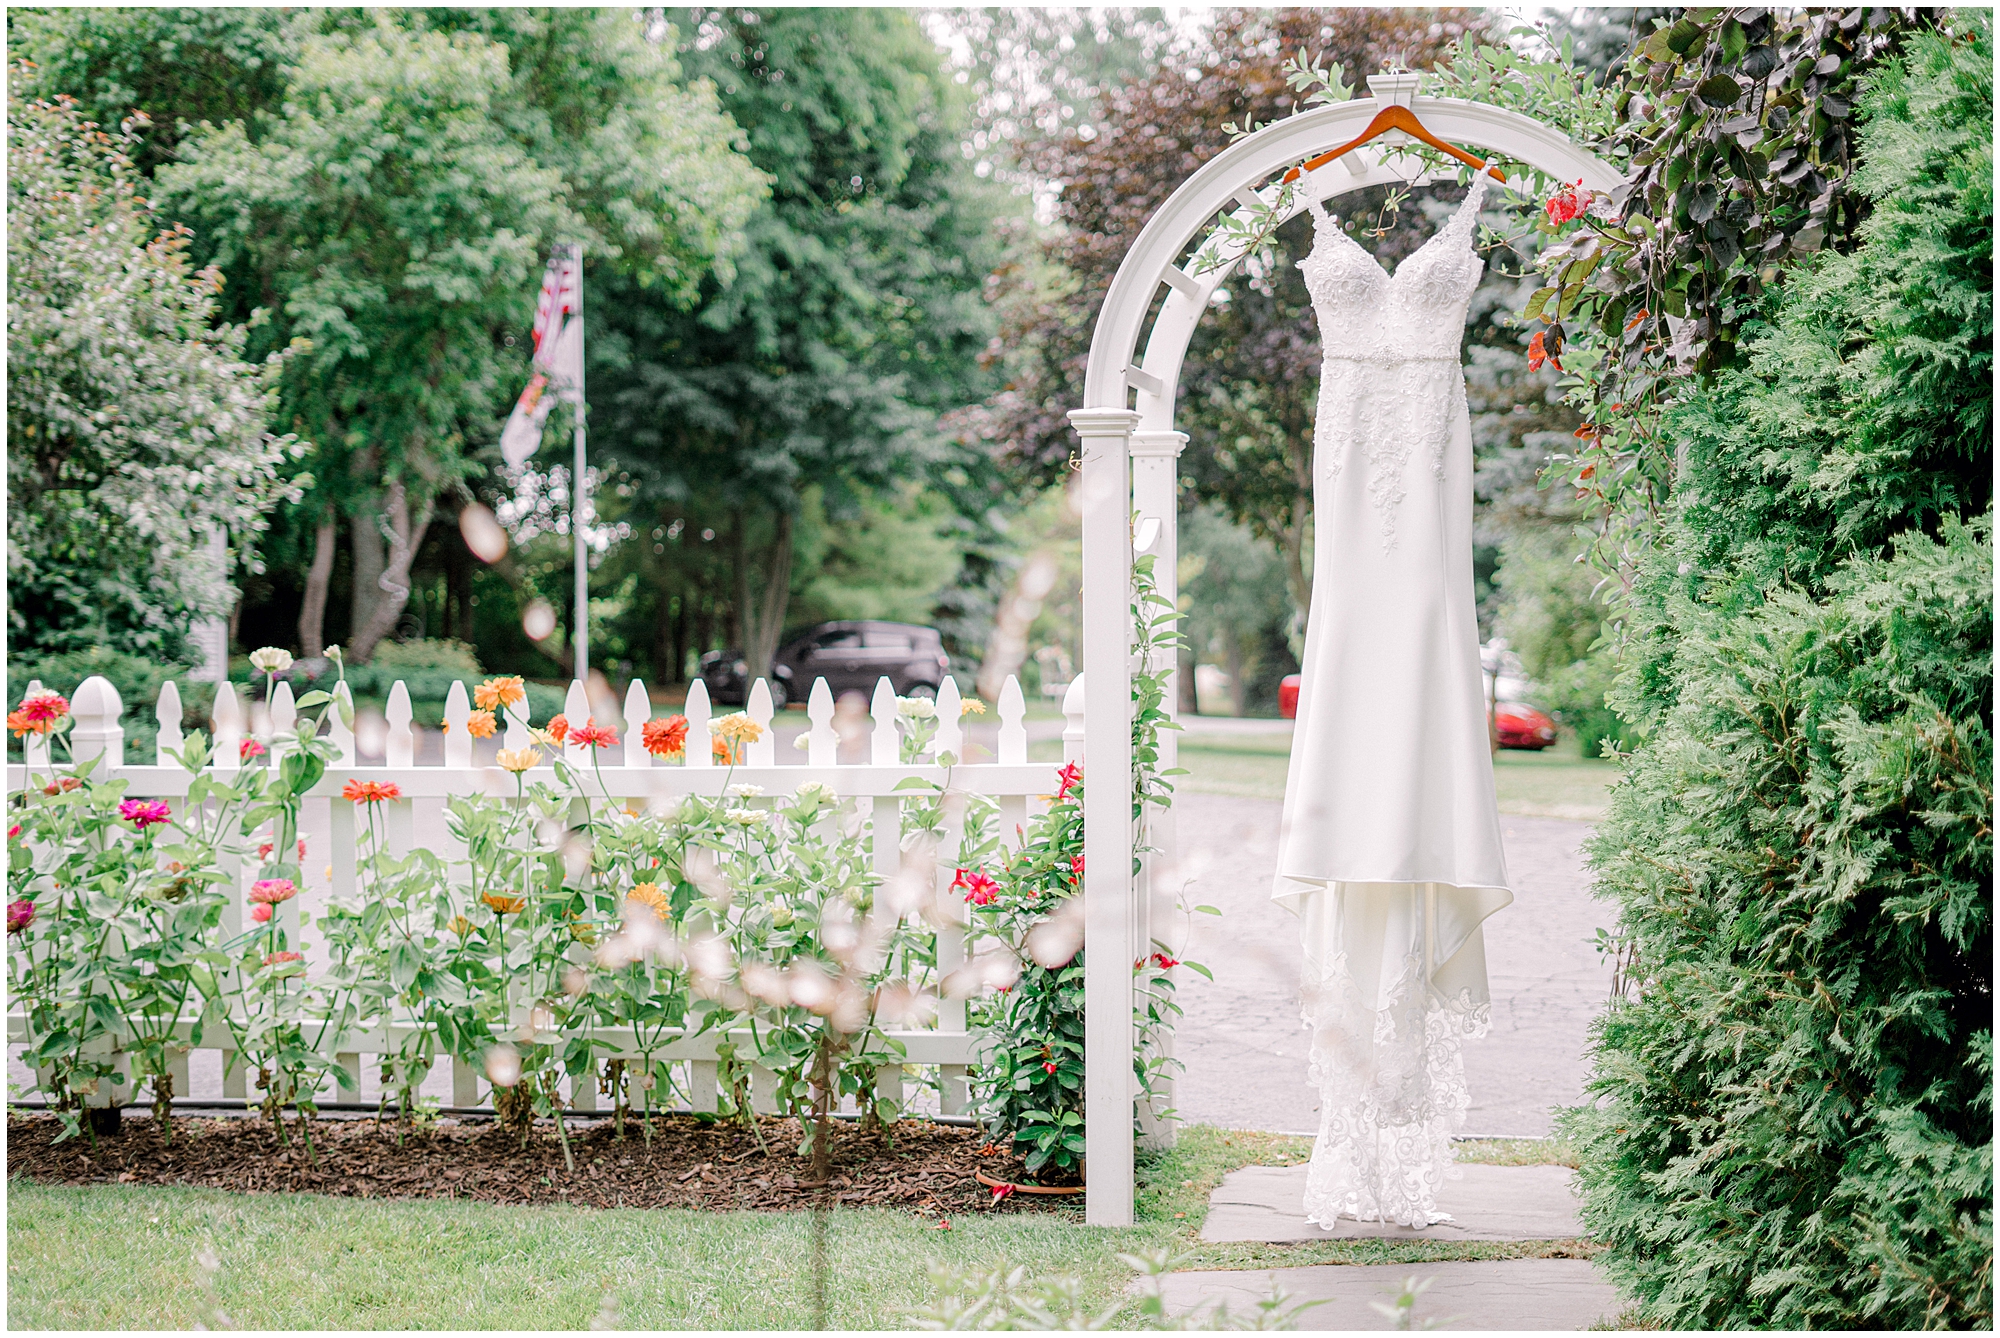 wedding dress hanging in garden wedding venue